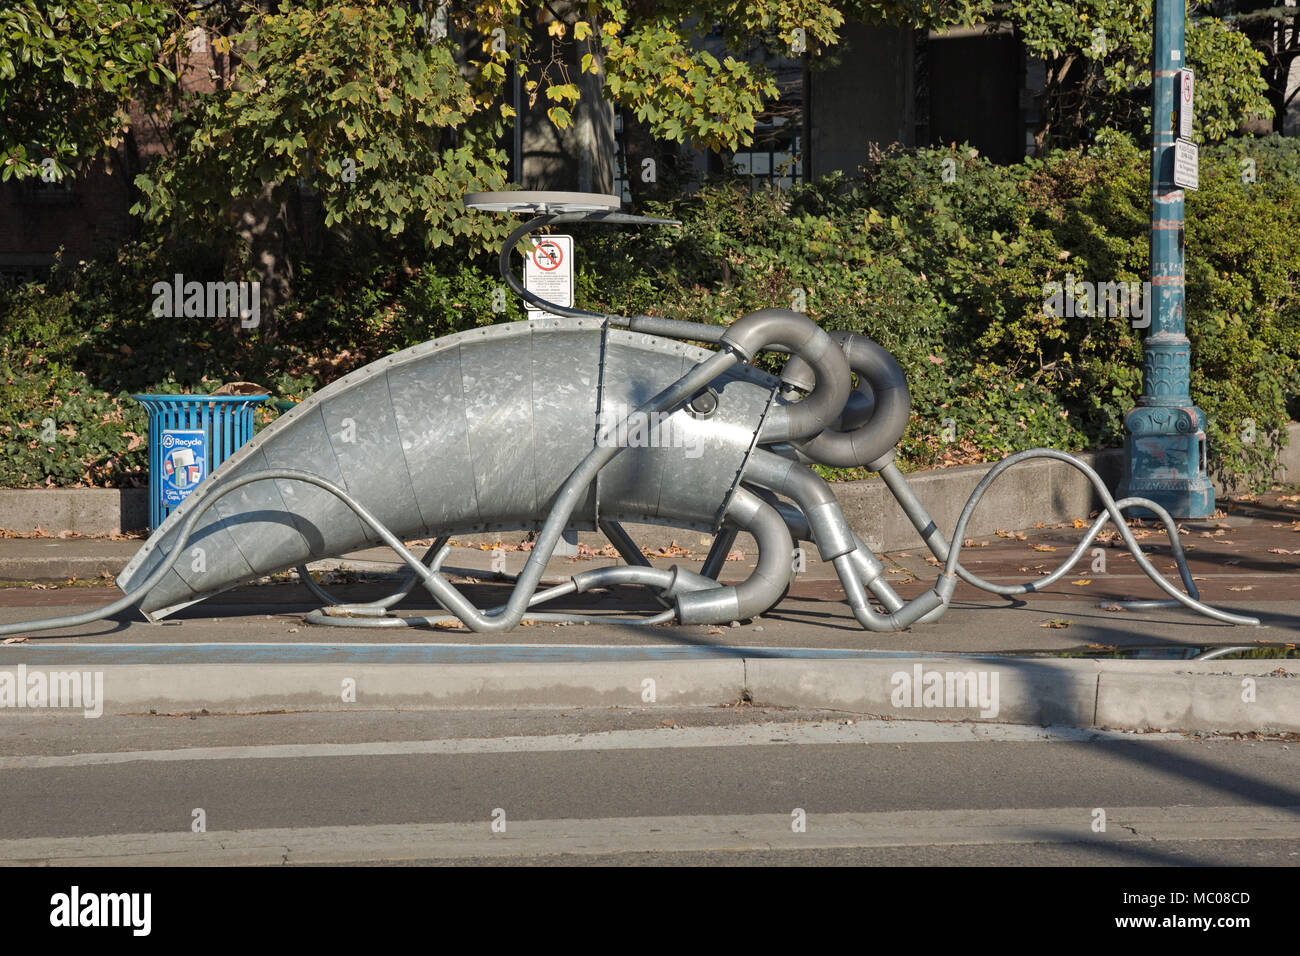 WA15123-00...WASHINGTON - Questa scultura di metallo di un calamaro gigante è in realtà un parcheggio di calamari con abbondanza di posizioni per bloccare su una bicicletta; trova alo Foto Stock